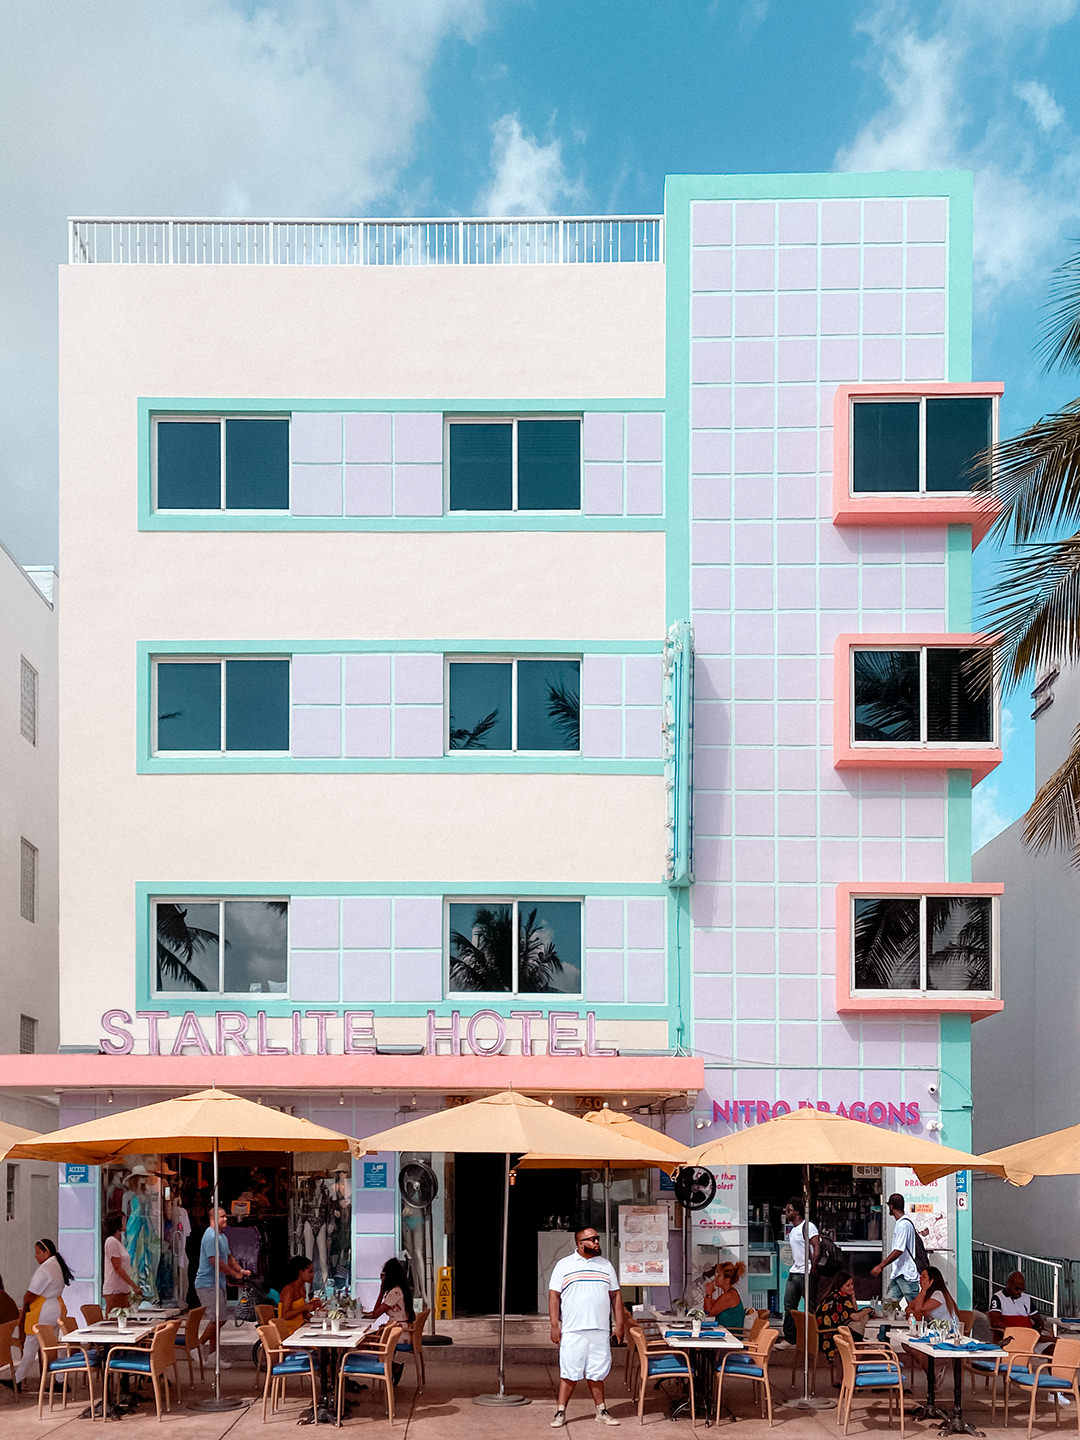 Legendäres Hotel direkt am Ocean Drive in Miami Beach - fotografiert von Nicolai Boenig